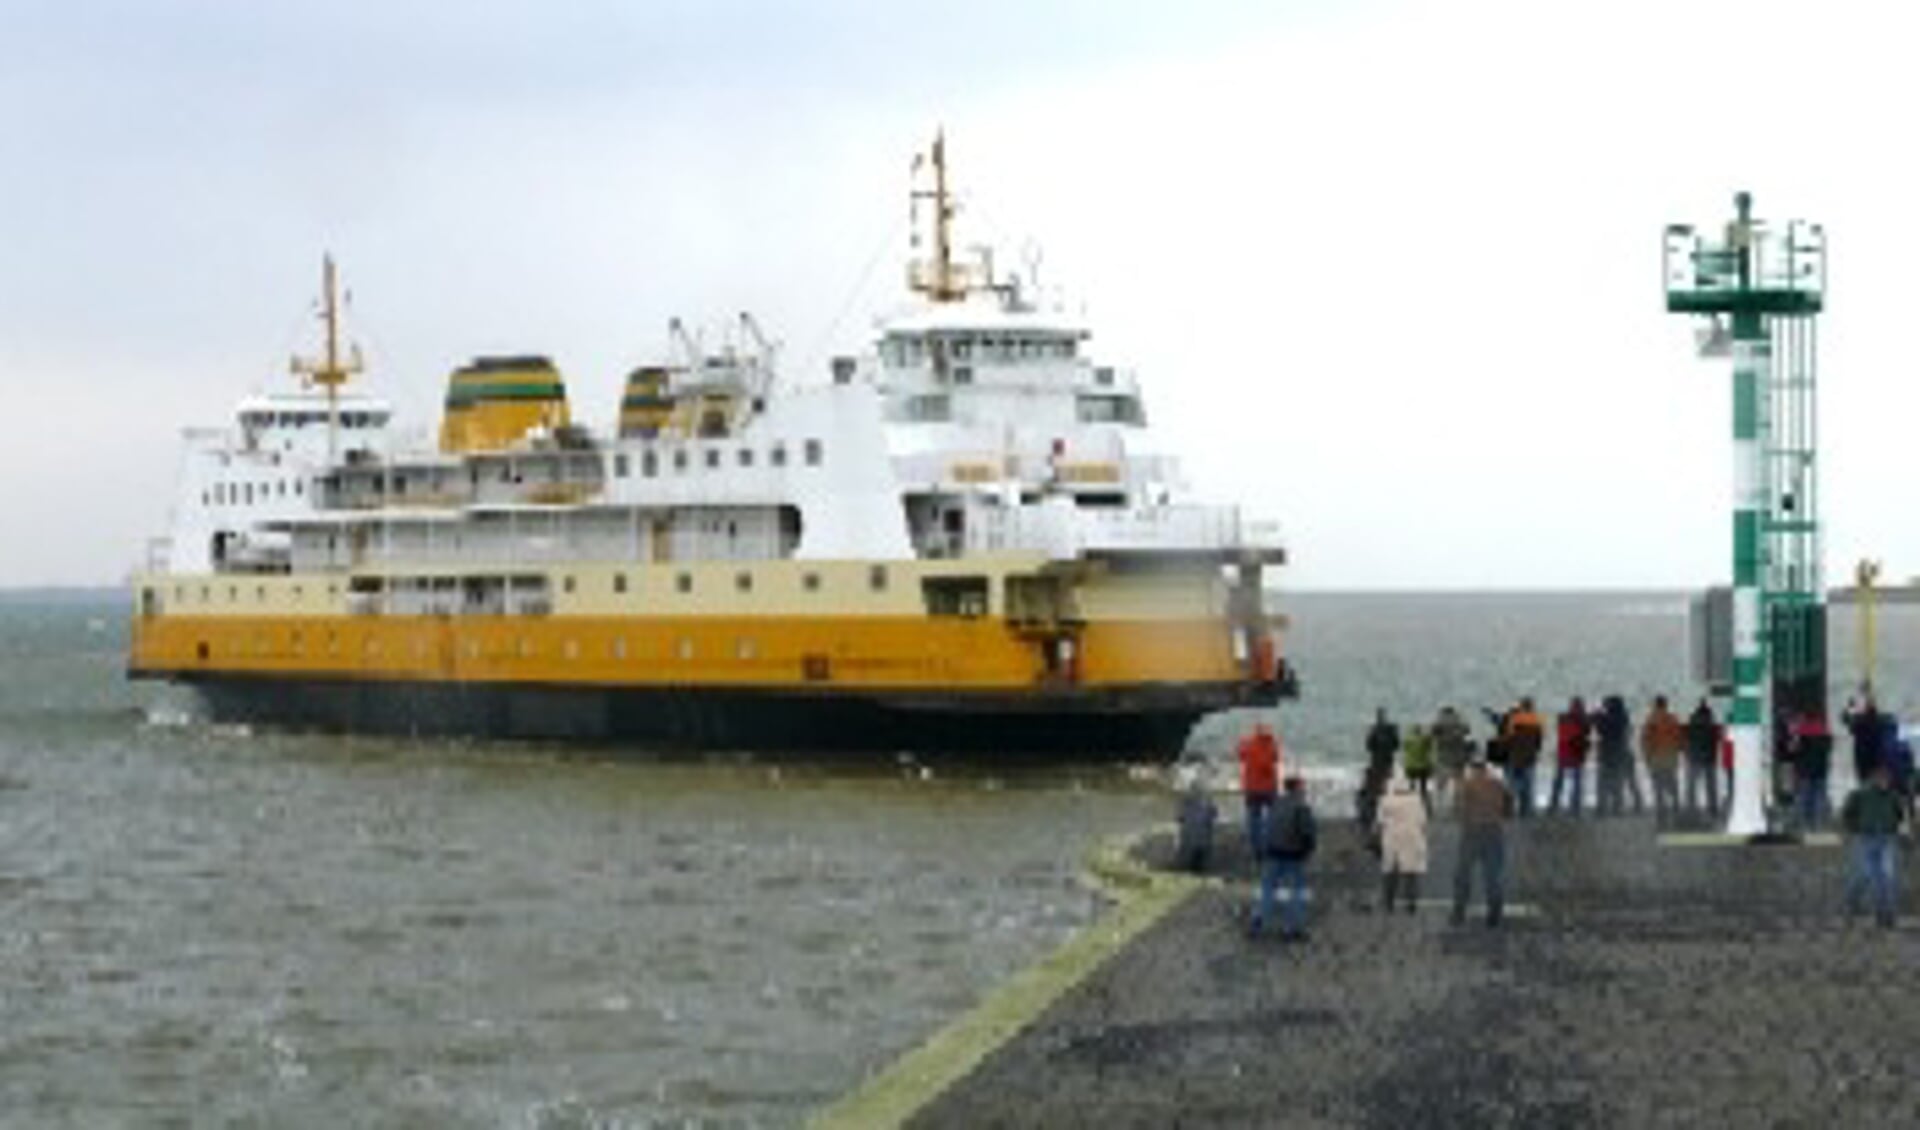 De voormalige veerboot Molengat wordt uitgezwaaid door vele belangstellenden. (Foto: Edo Kooiman)